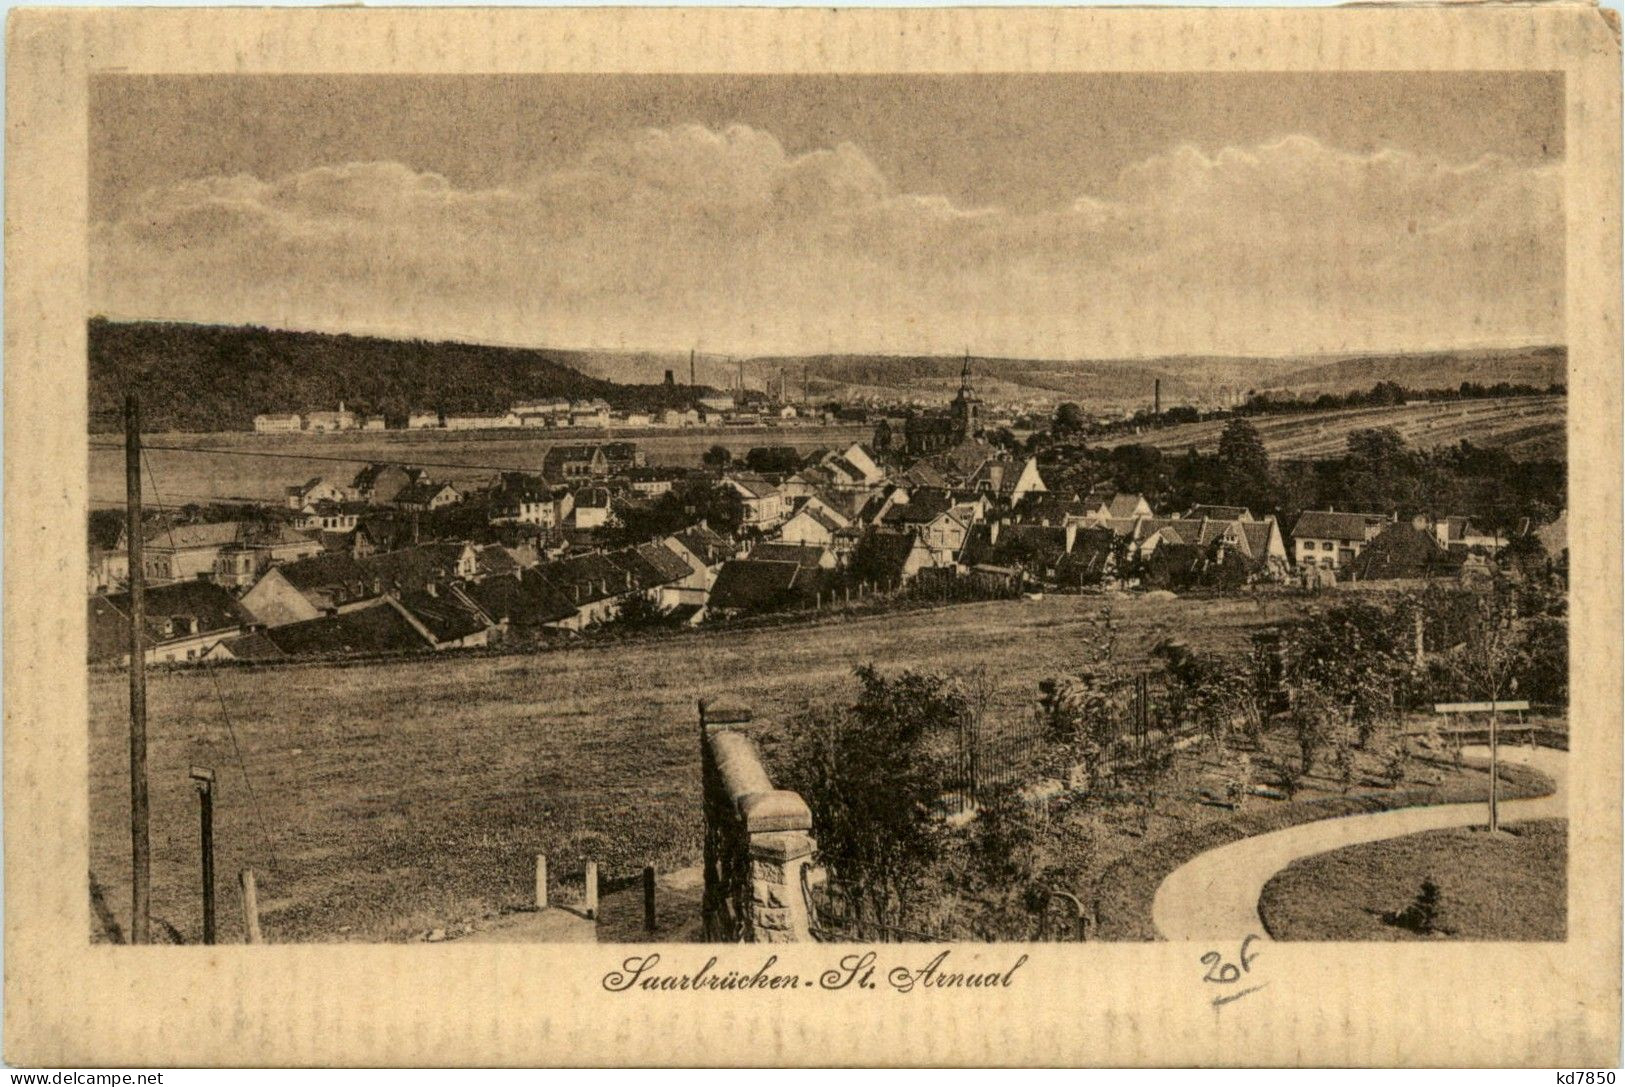 Saarbrücken - St. Arnual - Saarbrücken